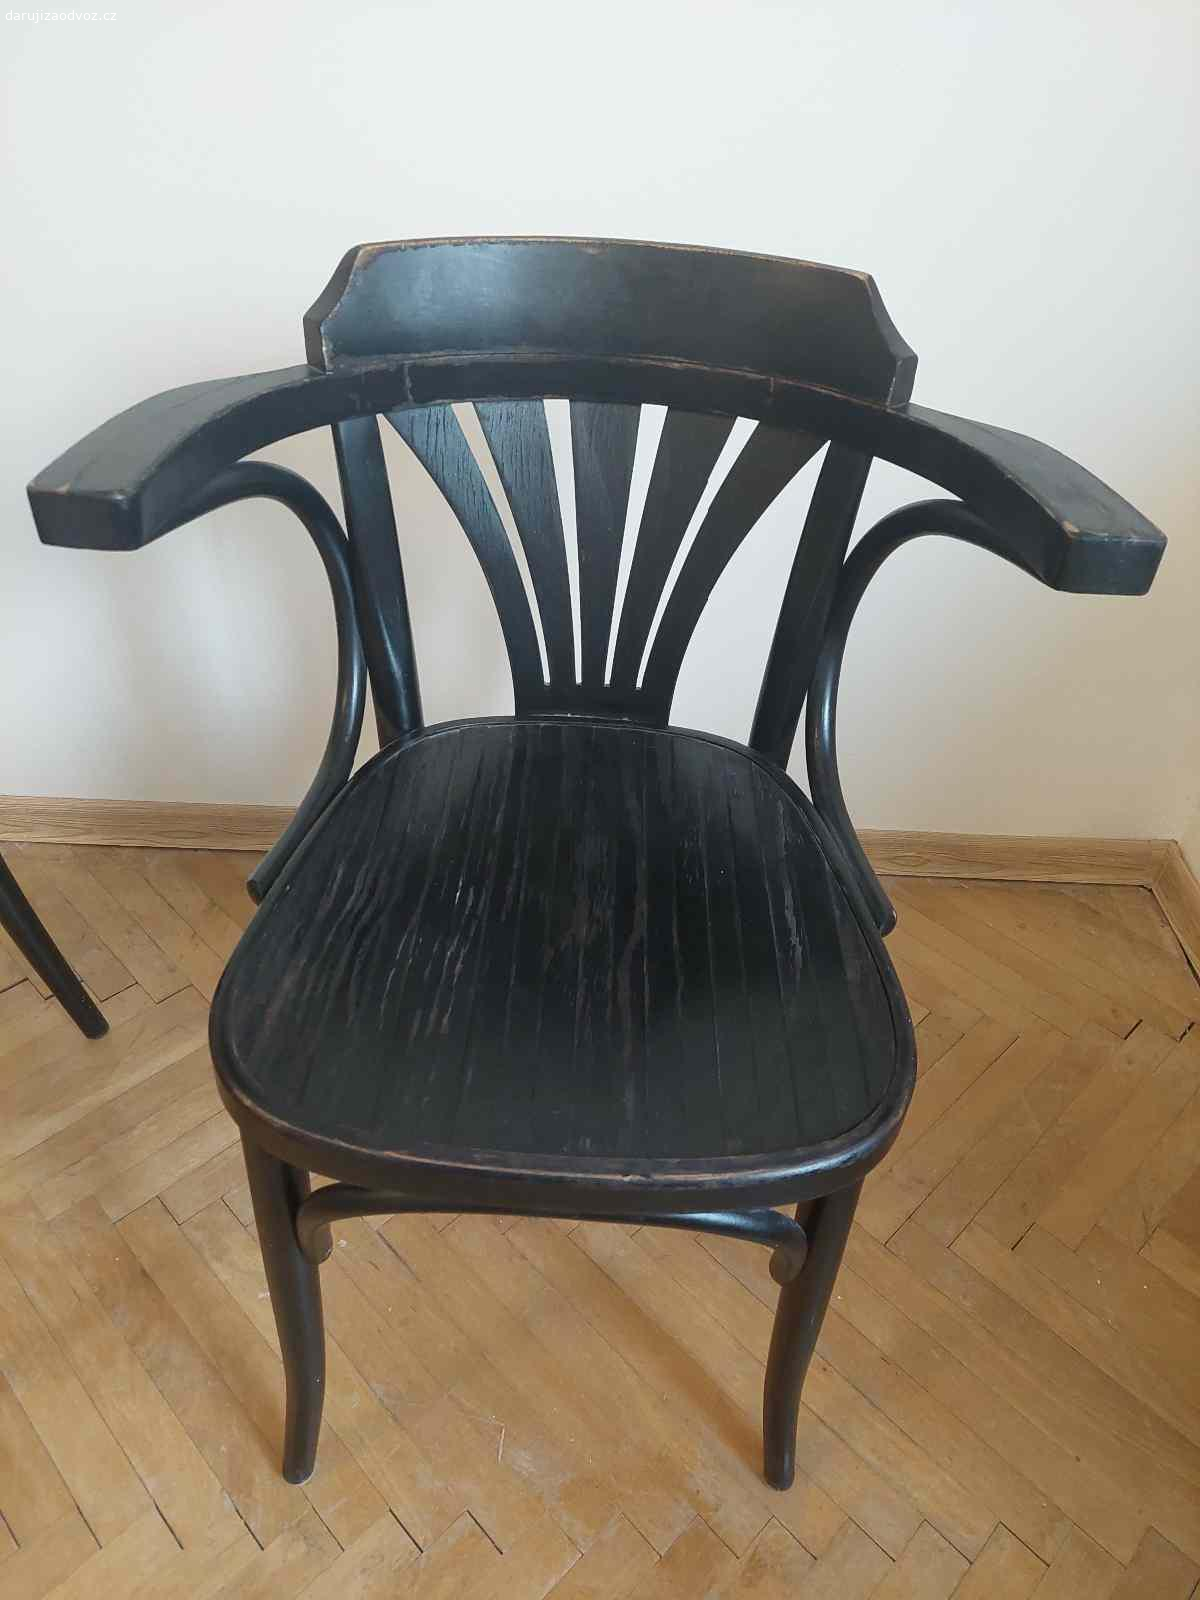 Daruji dvě židle TON. Výška 77 cm. Černá barva. Potřebovaly by trochu opravit, ale dá se na nich sedět bez problémů.